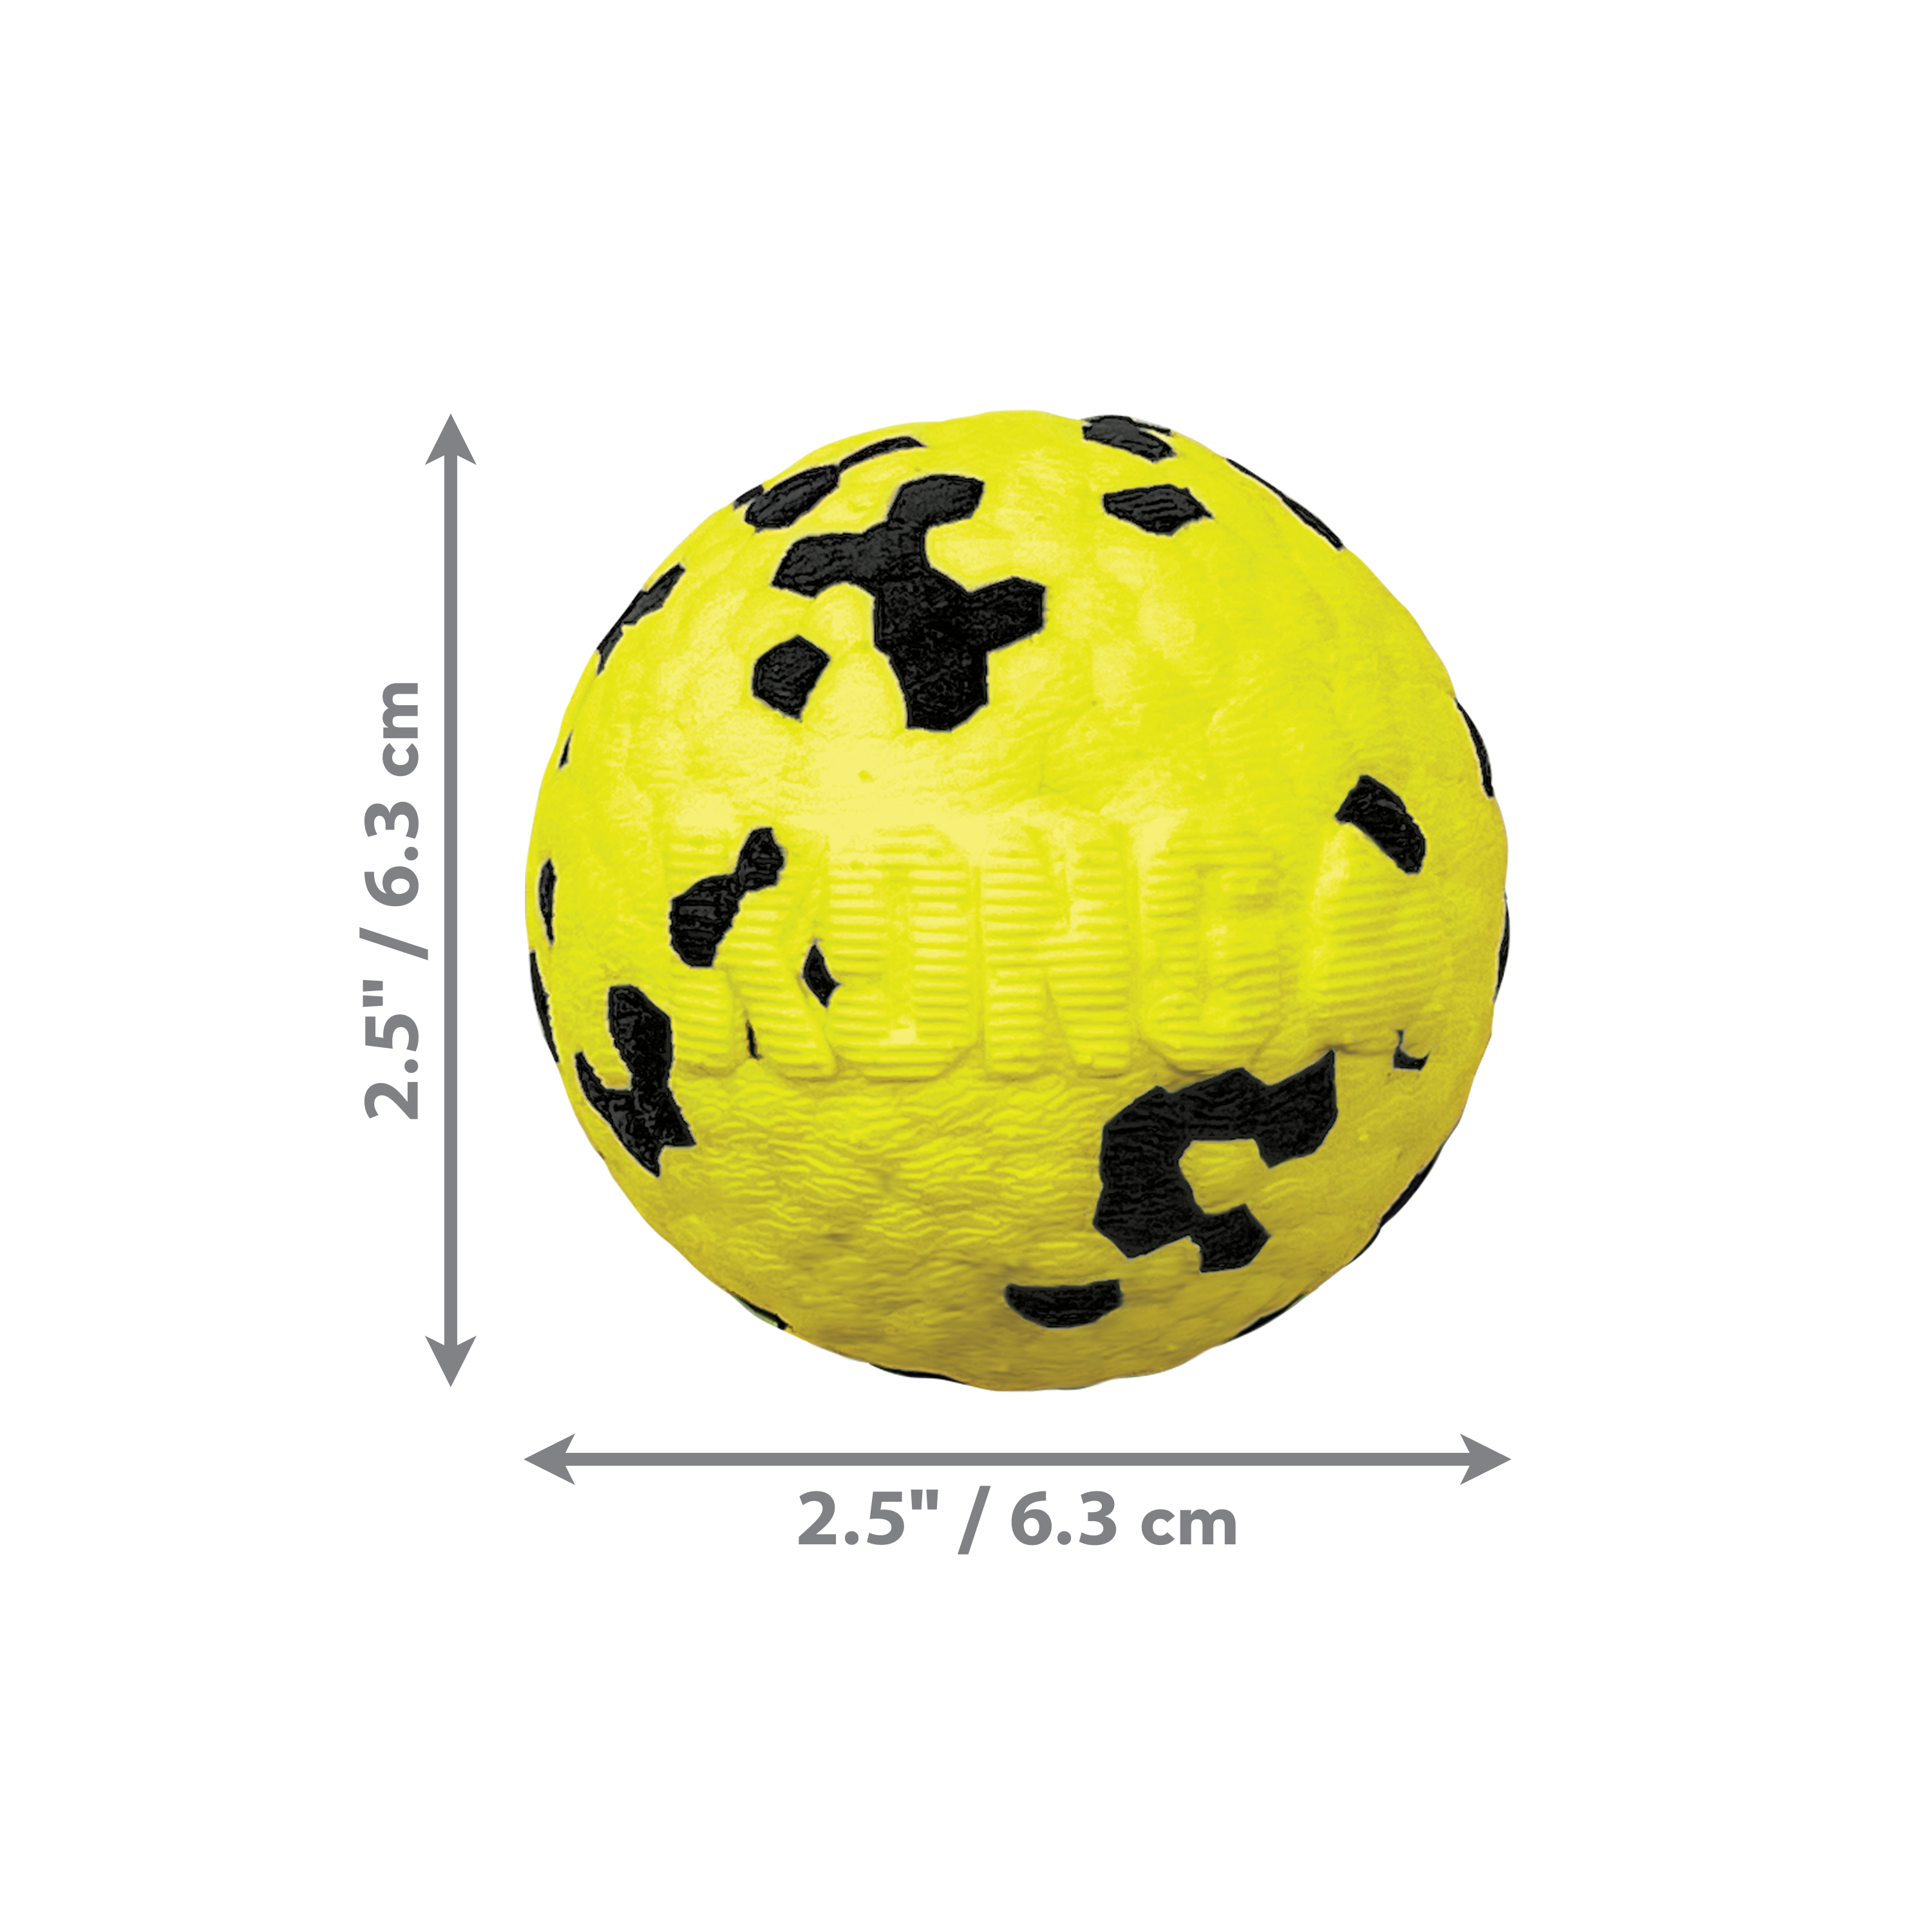 Reflex Ball dimoffpack produktbillede